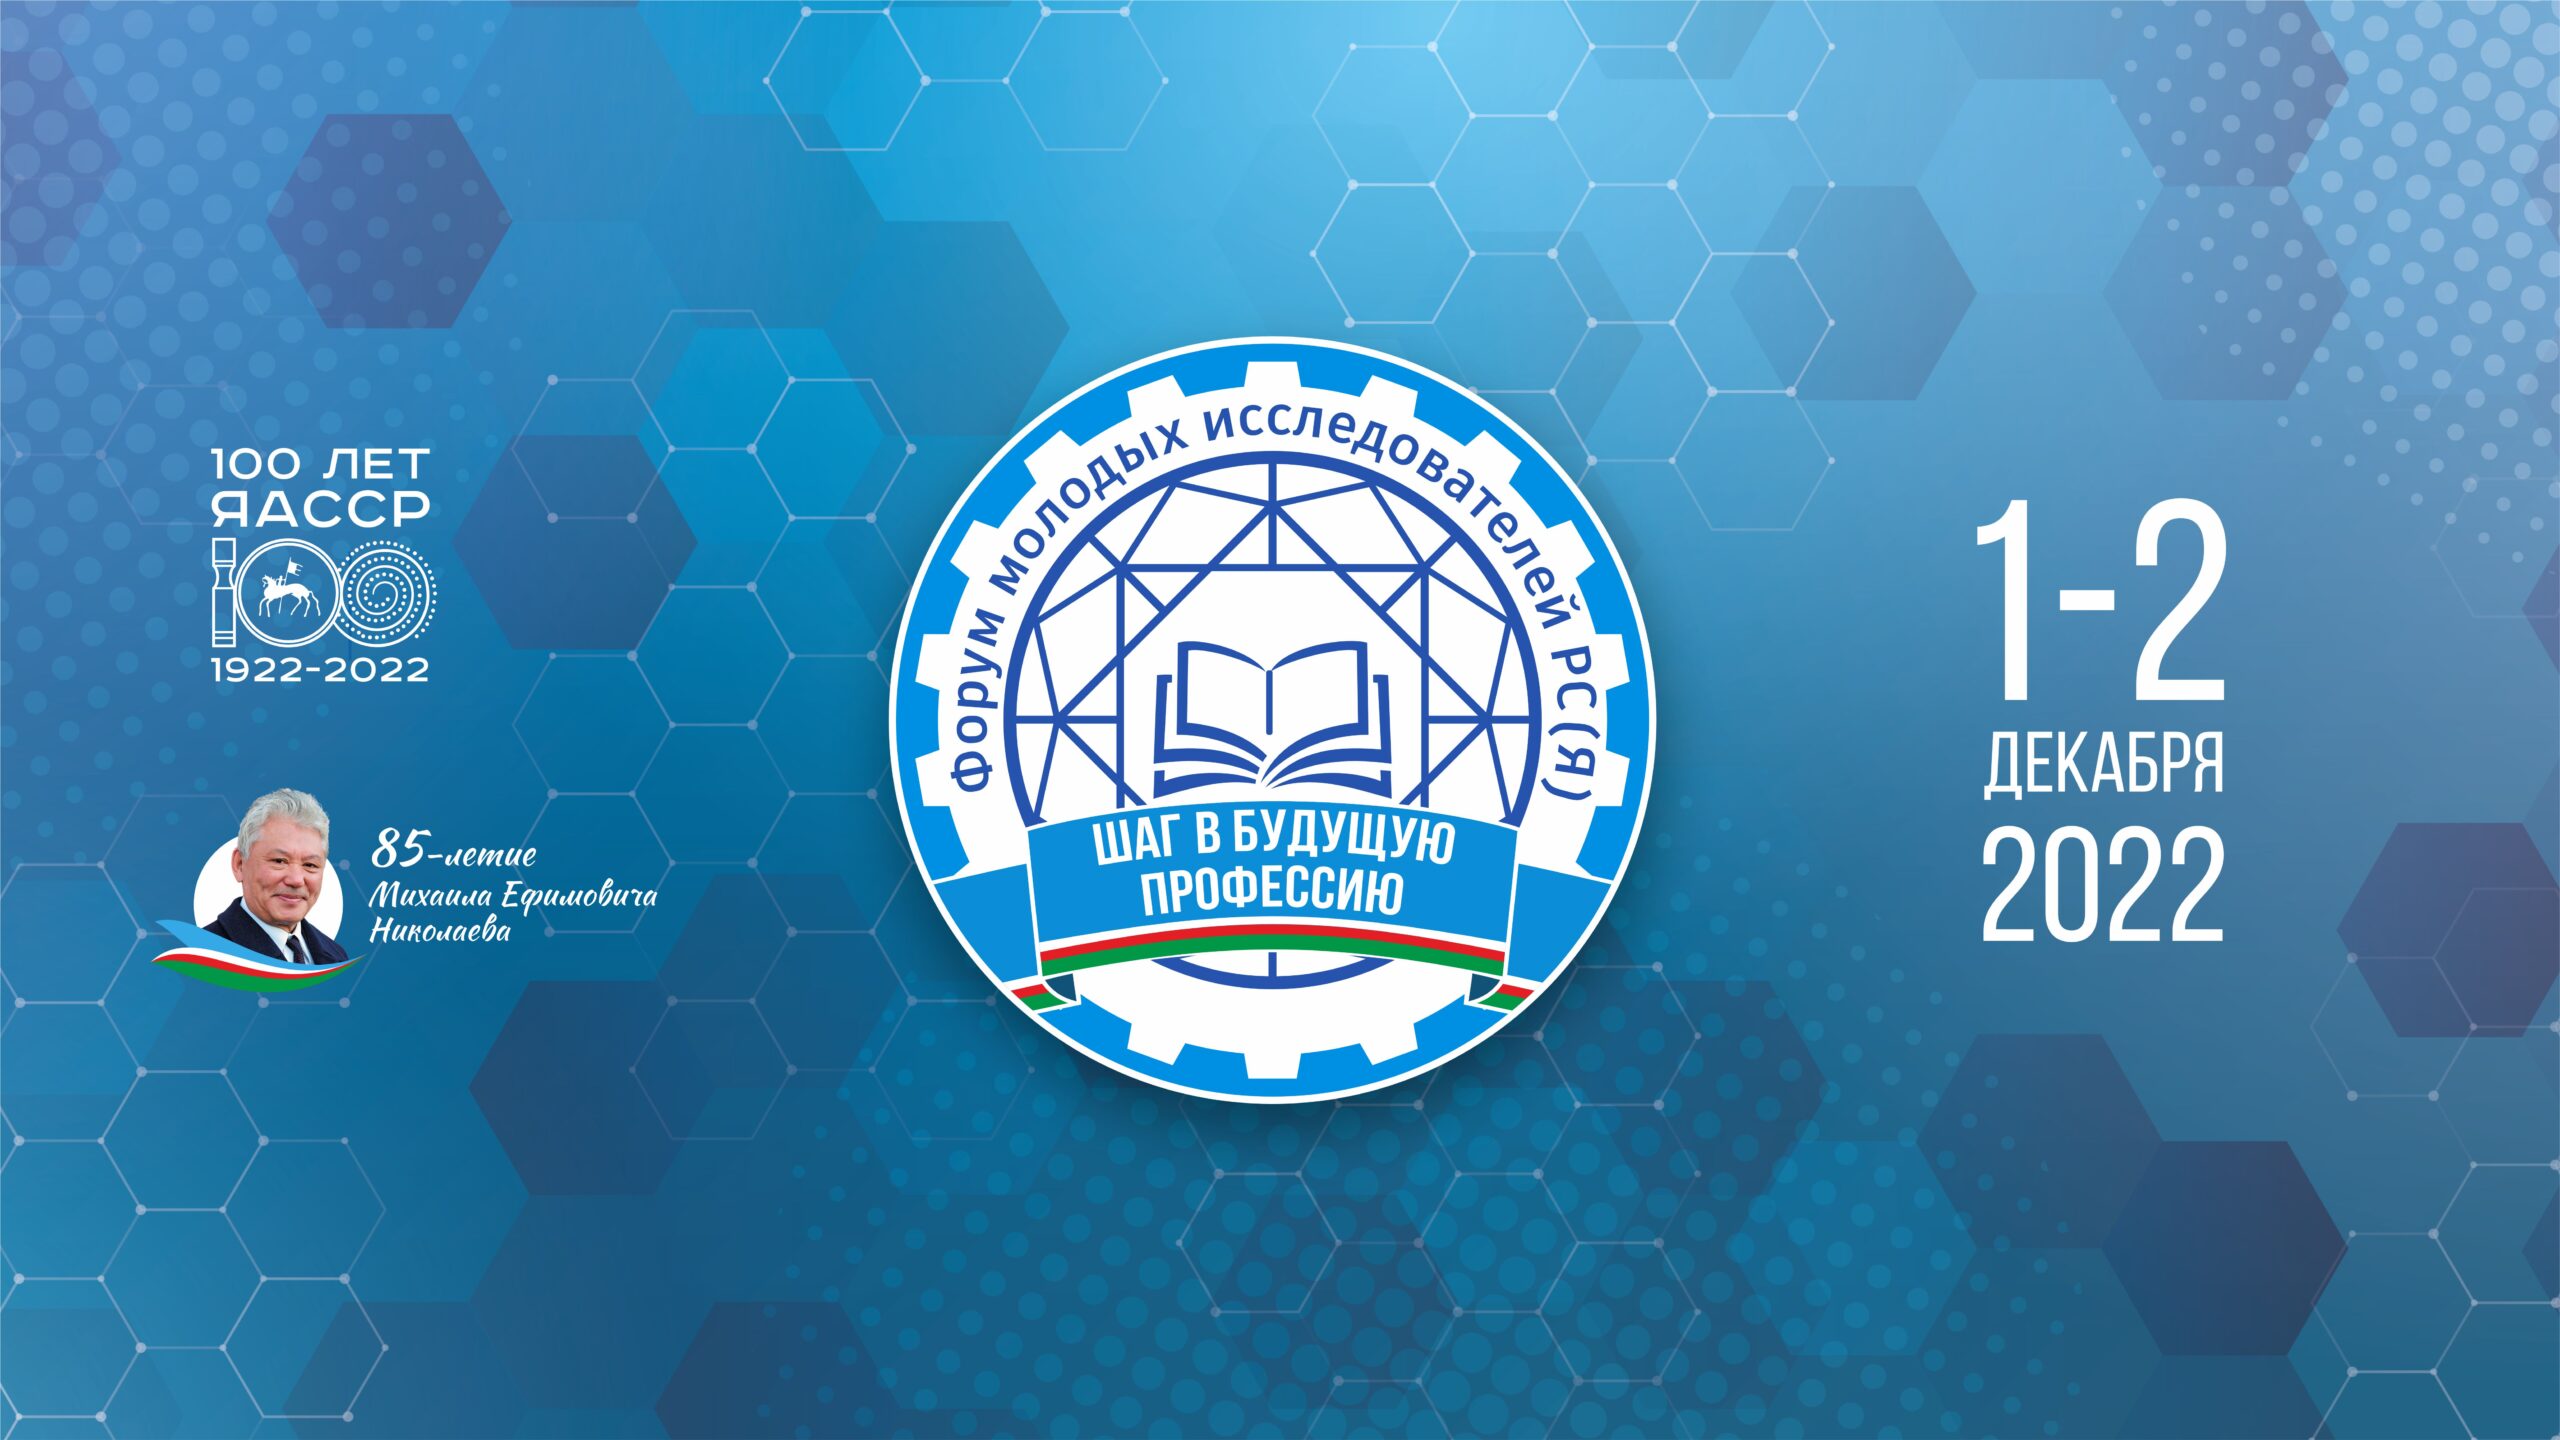 Форум молодых исследователей «Шаг в будущую профессию» пройдет в Якутии 1-2 декабря